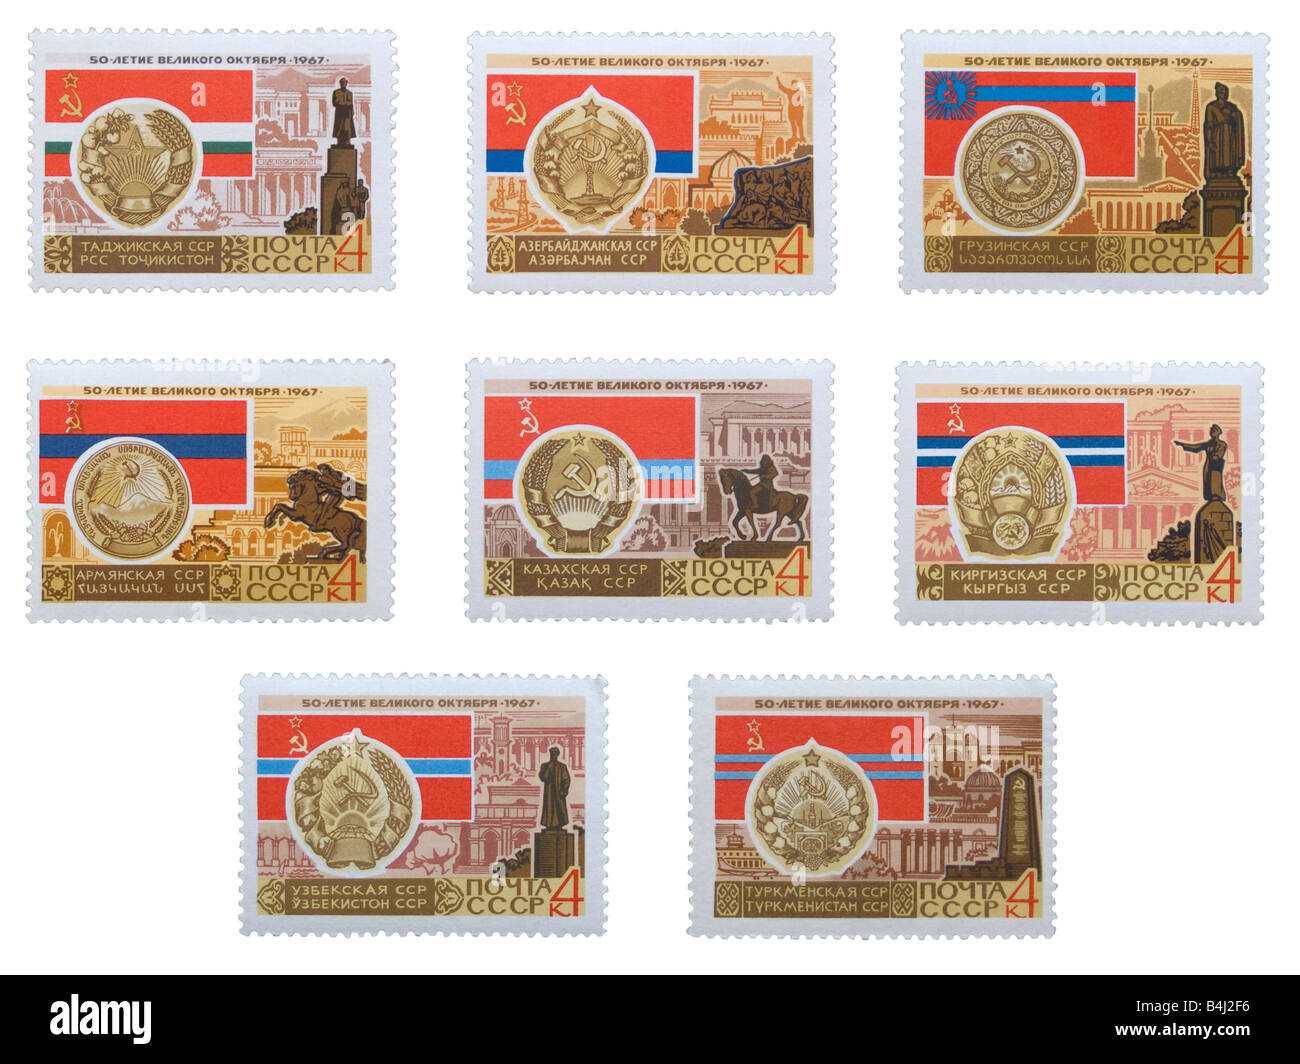 Repubbliche Sovietiche (parte 2) - Tagikistan, Azerbaigian, Georgia, Armenia, Kazakistan, Kirghizistan, Uzbekistan e Turkmenistan Foto Stock